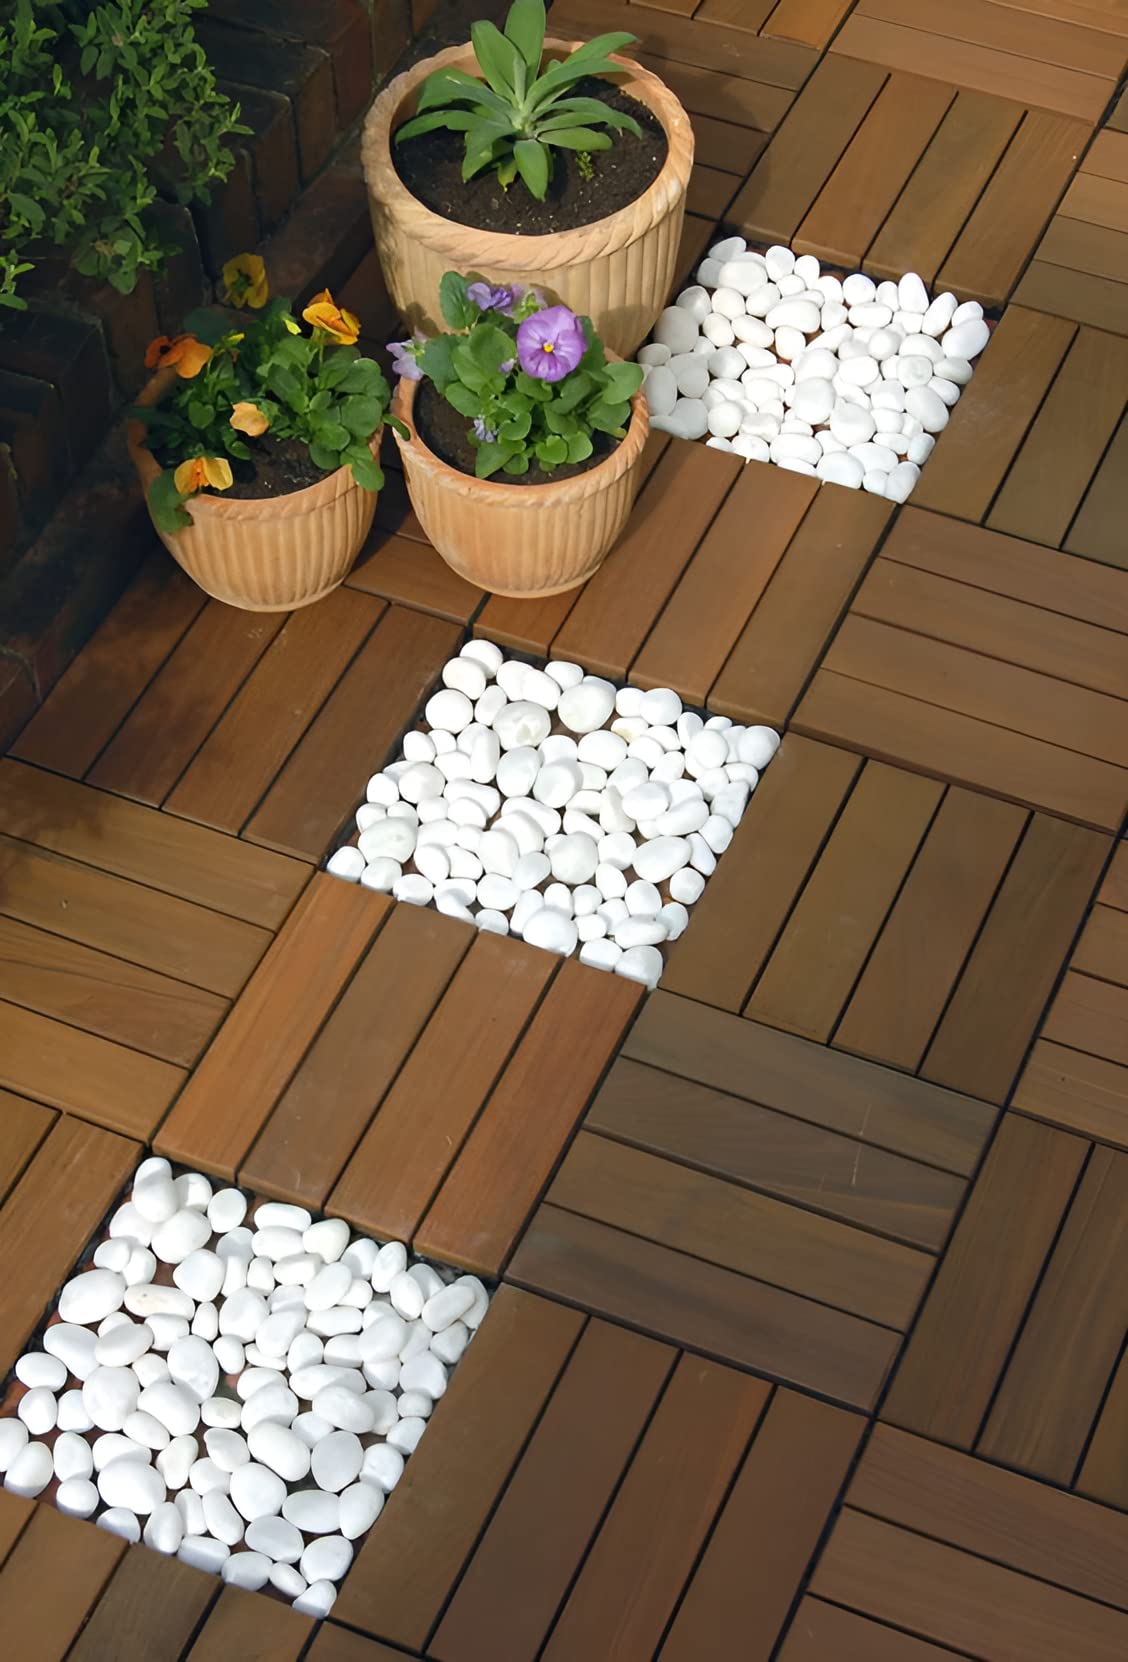 Plantex Tiles for Floor-Interlocking Wooden Tiles/Garden Tile/Quick Flooring Solution for Indoor/Outdoor Deck Tile-Pack of 1 (Merbau Wood,APS-1226)